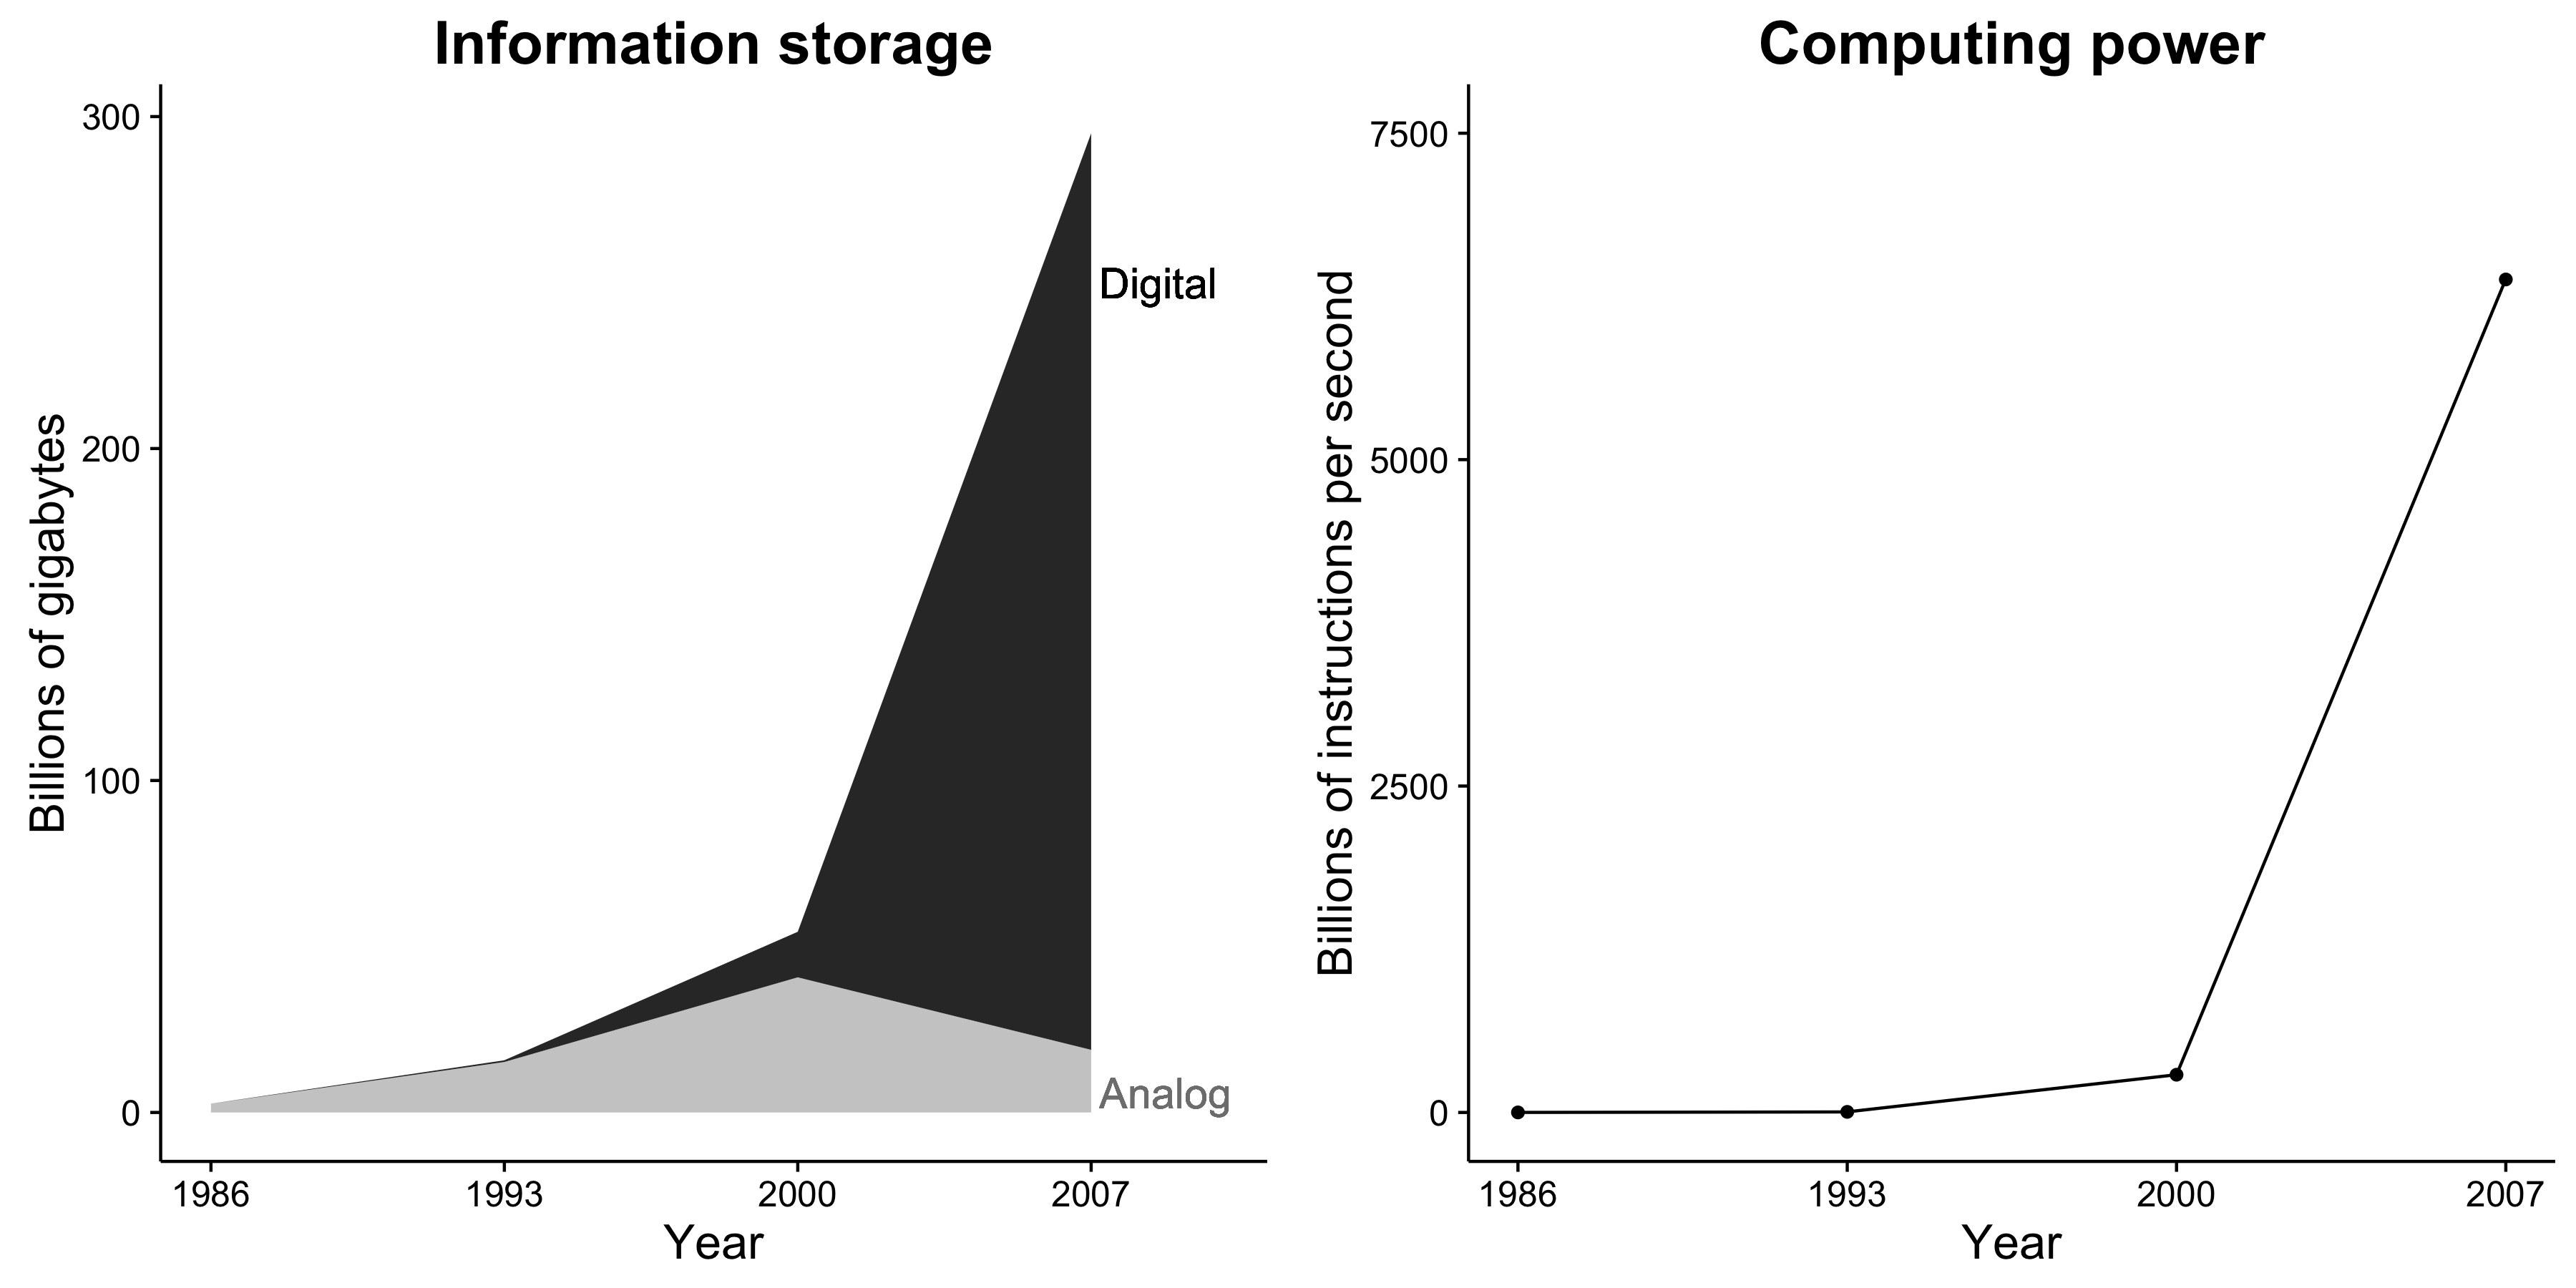 Şekil 1.1: Bilgi depolama kapasitesi ve hesaplama gücü önemli ölçüde artmaktadır. Ayrıca, bilgi depolama artık neredeyse sadece dijitaldir. Bu değişiklikler sosyal araştırmacılar için inanılmaz fırsatlar yaratır. Hilbert ve López'den (2011) uyarlanmış, şekil 2 ve 5.